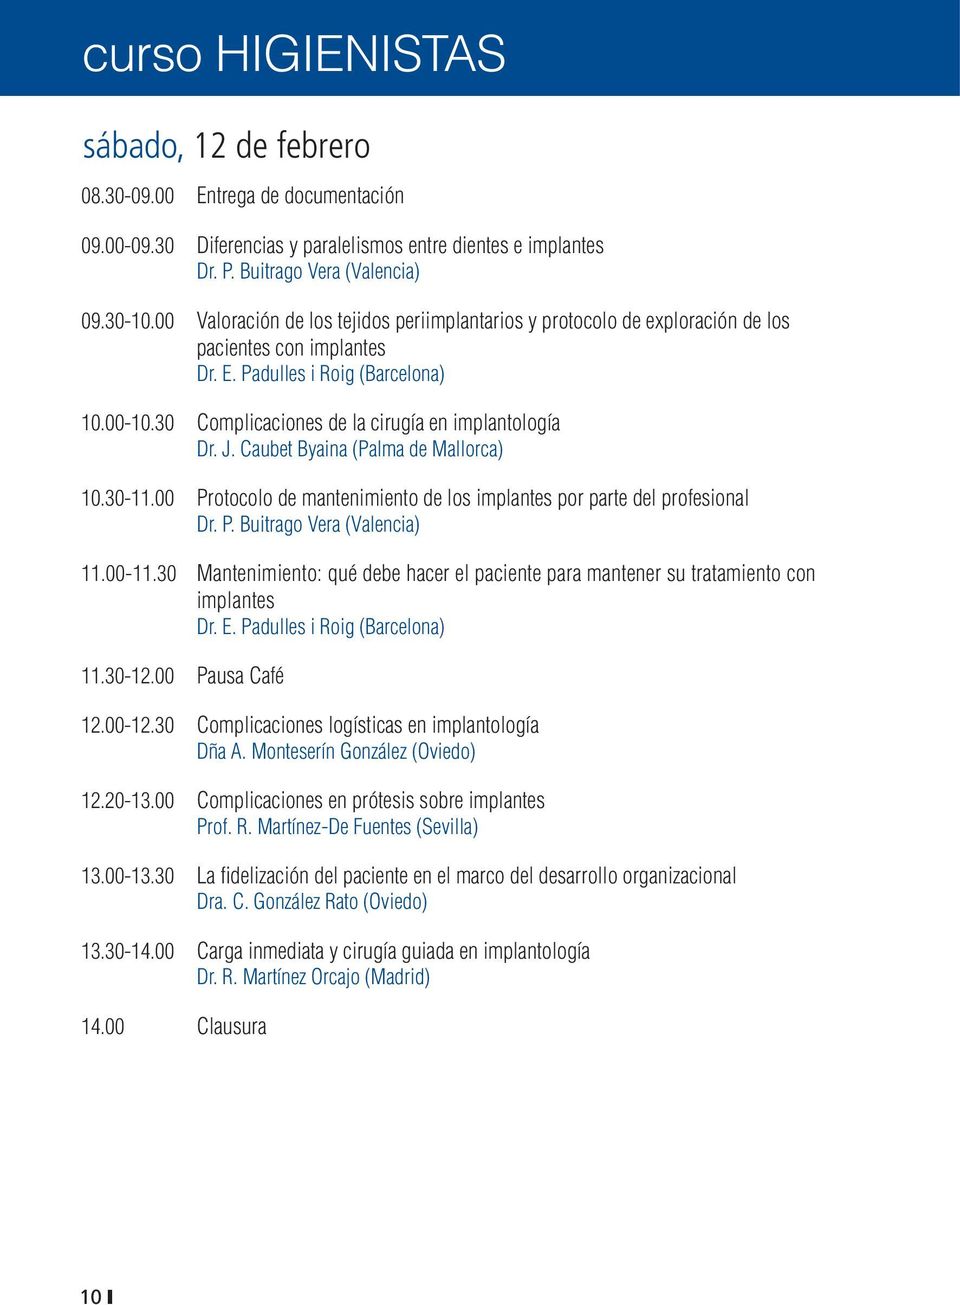 J. Caubet Byaina (Palma de Mallorca) 10.30-11.00 Protocolo de mantenimiento de los implantes por parte del profesional Dr. P. Buitrago Vera (Valencia) 11.00-11.